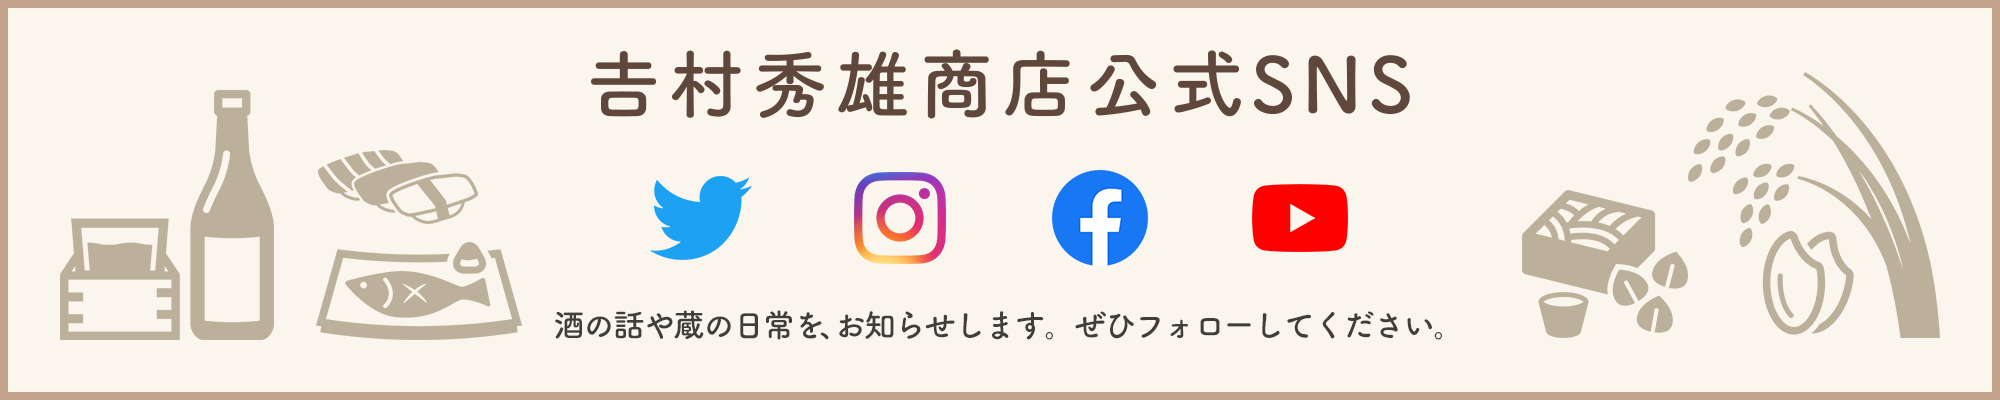 吉村秀雄商店公式SNS 蔵の日常、新製品・イベント情報をお知らせします。